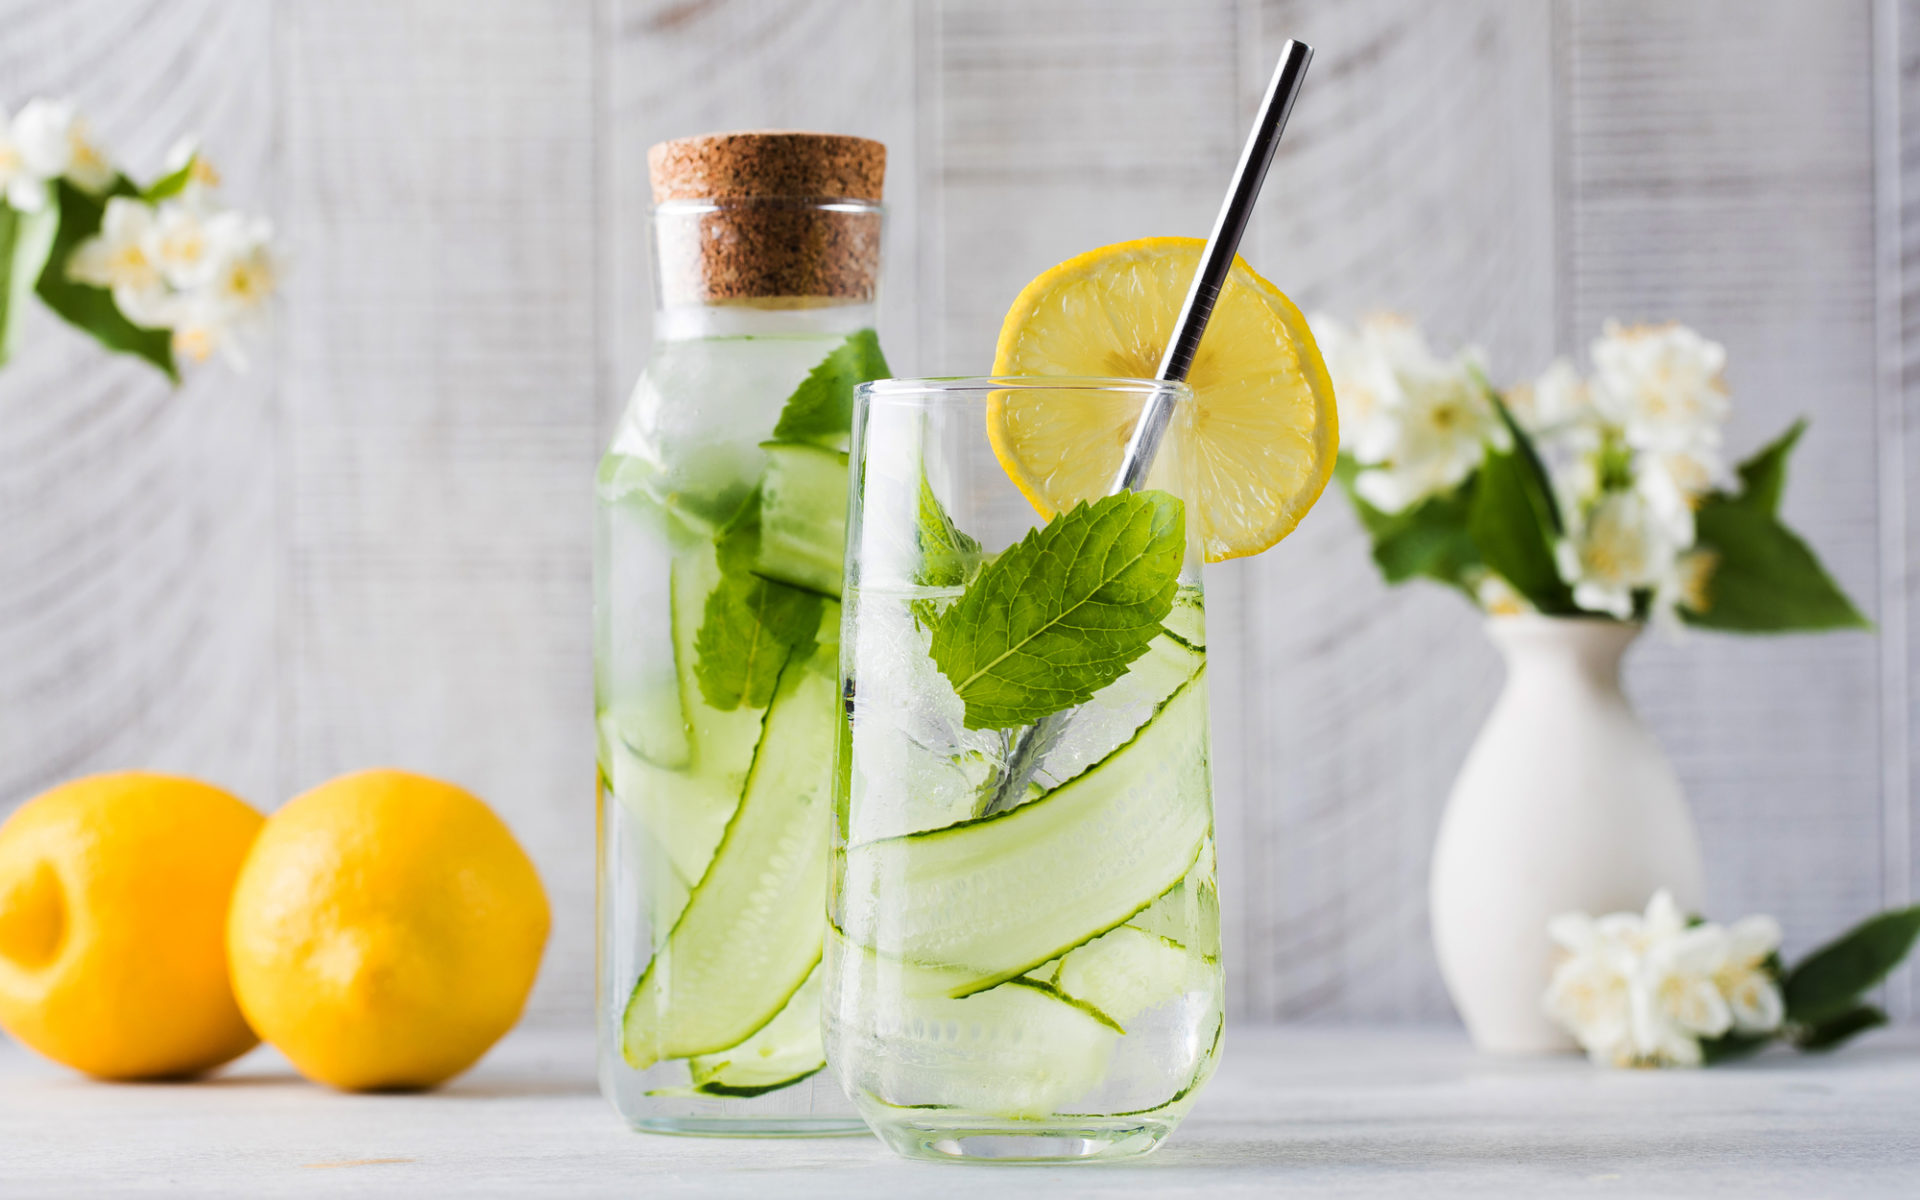 Acqua aromatizzata con cetriolo, menta e limone in una bottiglia e un bicchiere